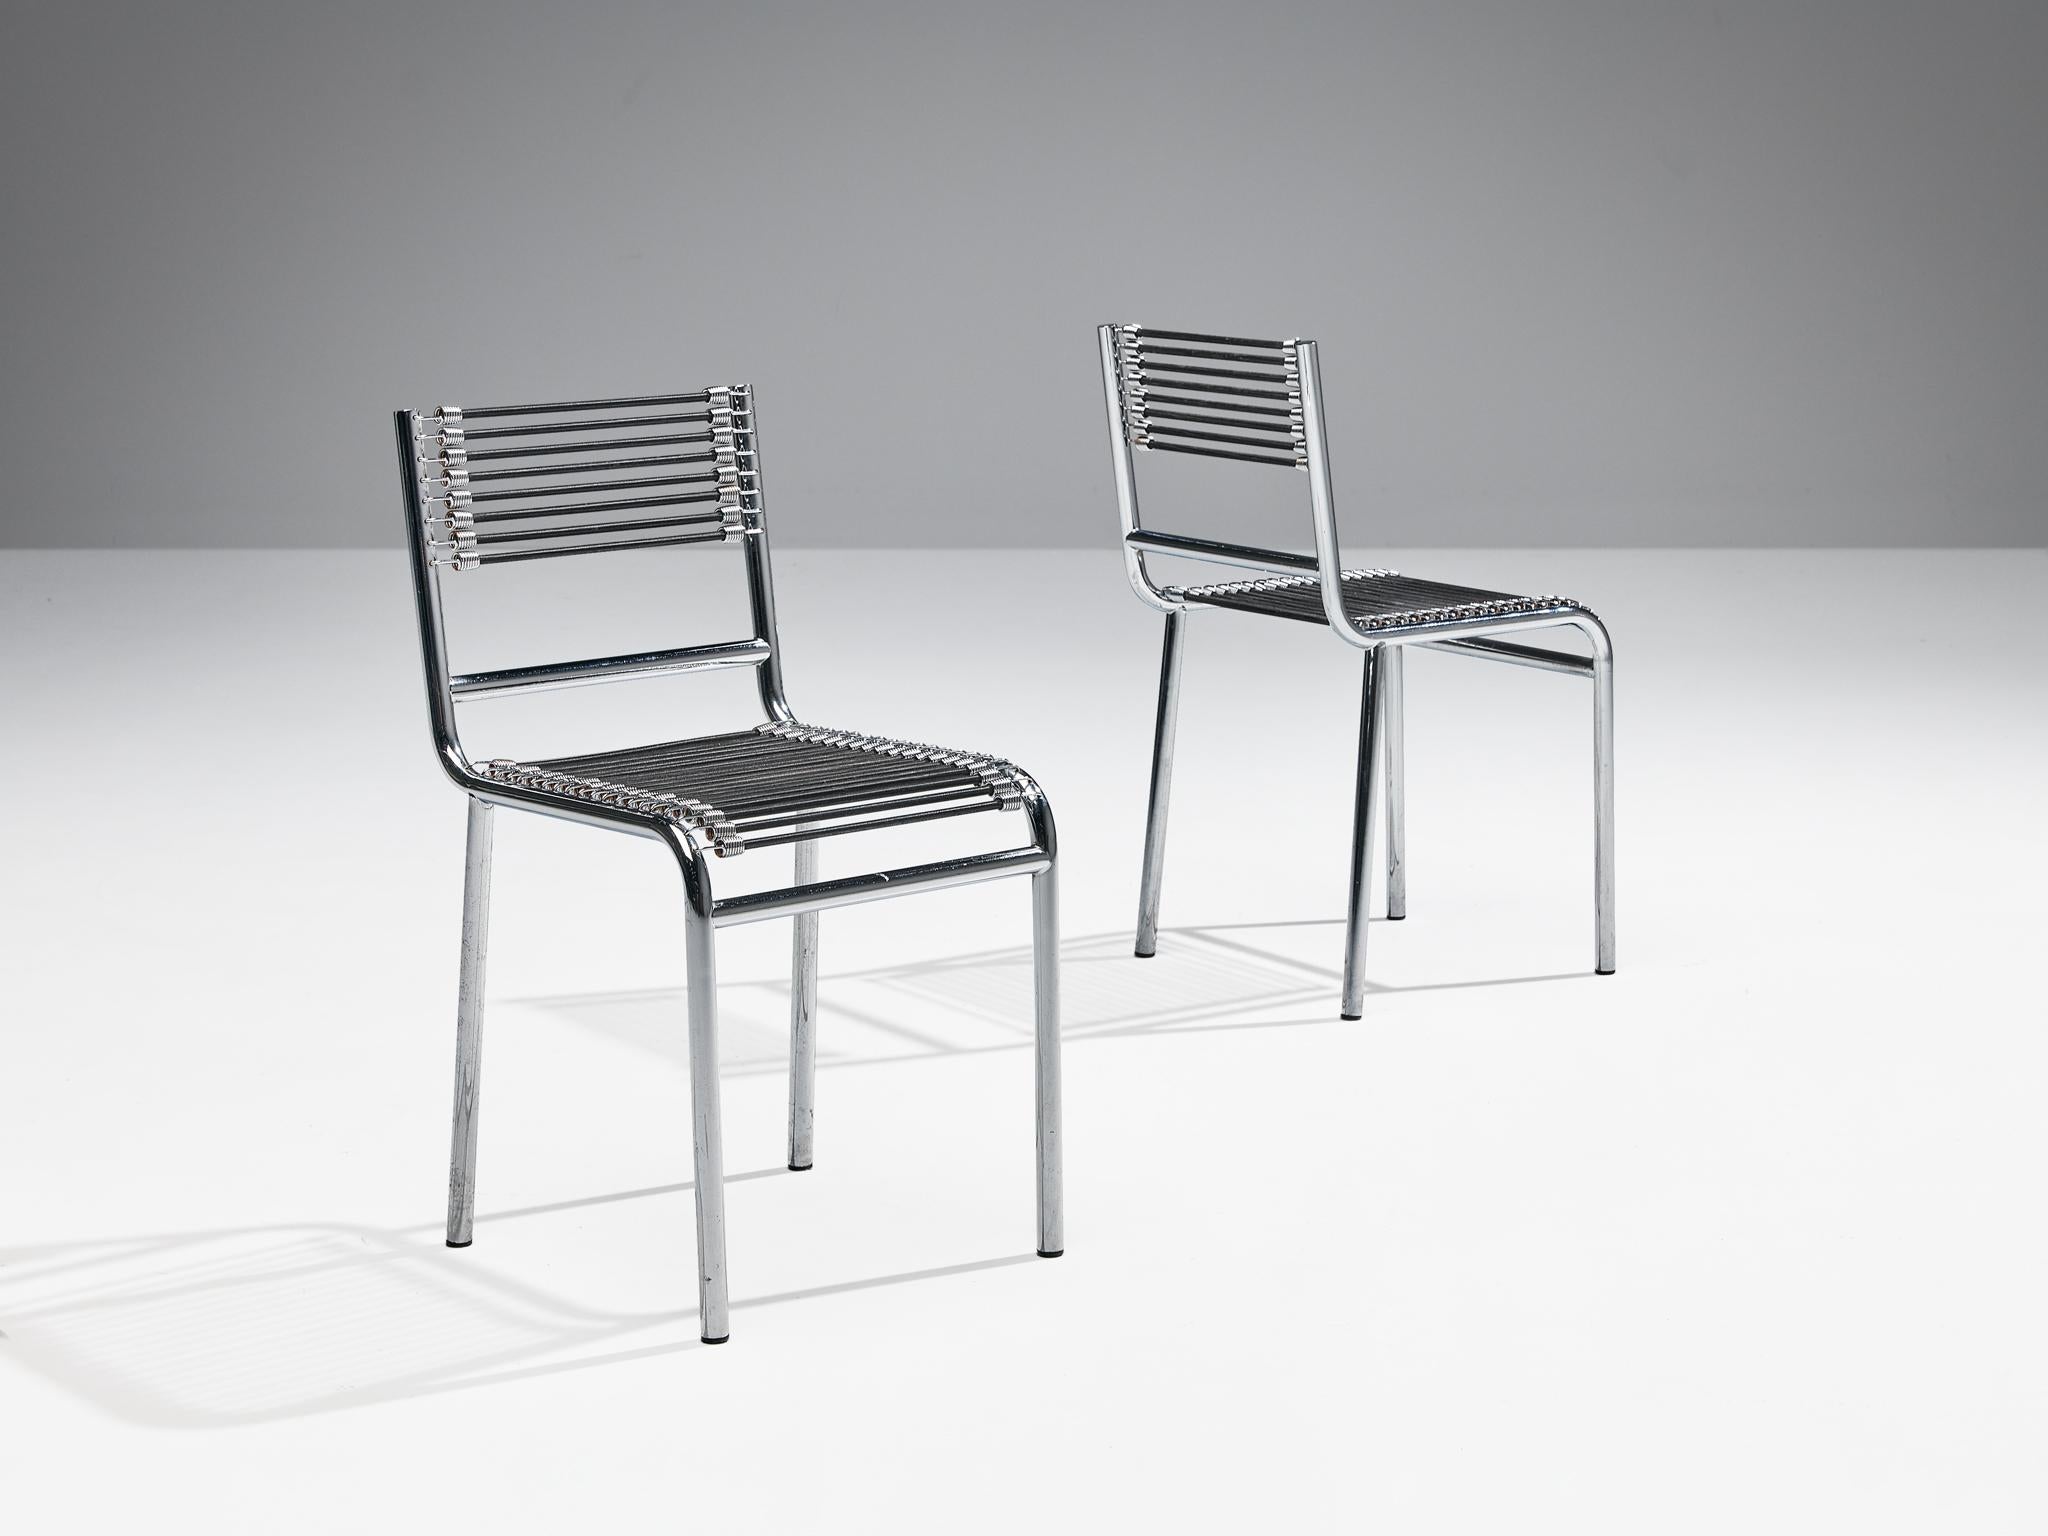 René Herbst, paire de chaises 'Sandows', modèle '101', acier chromé, corde élastique, France, design 1928, produit dans les années 1970.

La chaise 'Steele' incarne les avancées industrielles des années 20, avec une construction en acier tubulaire